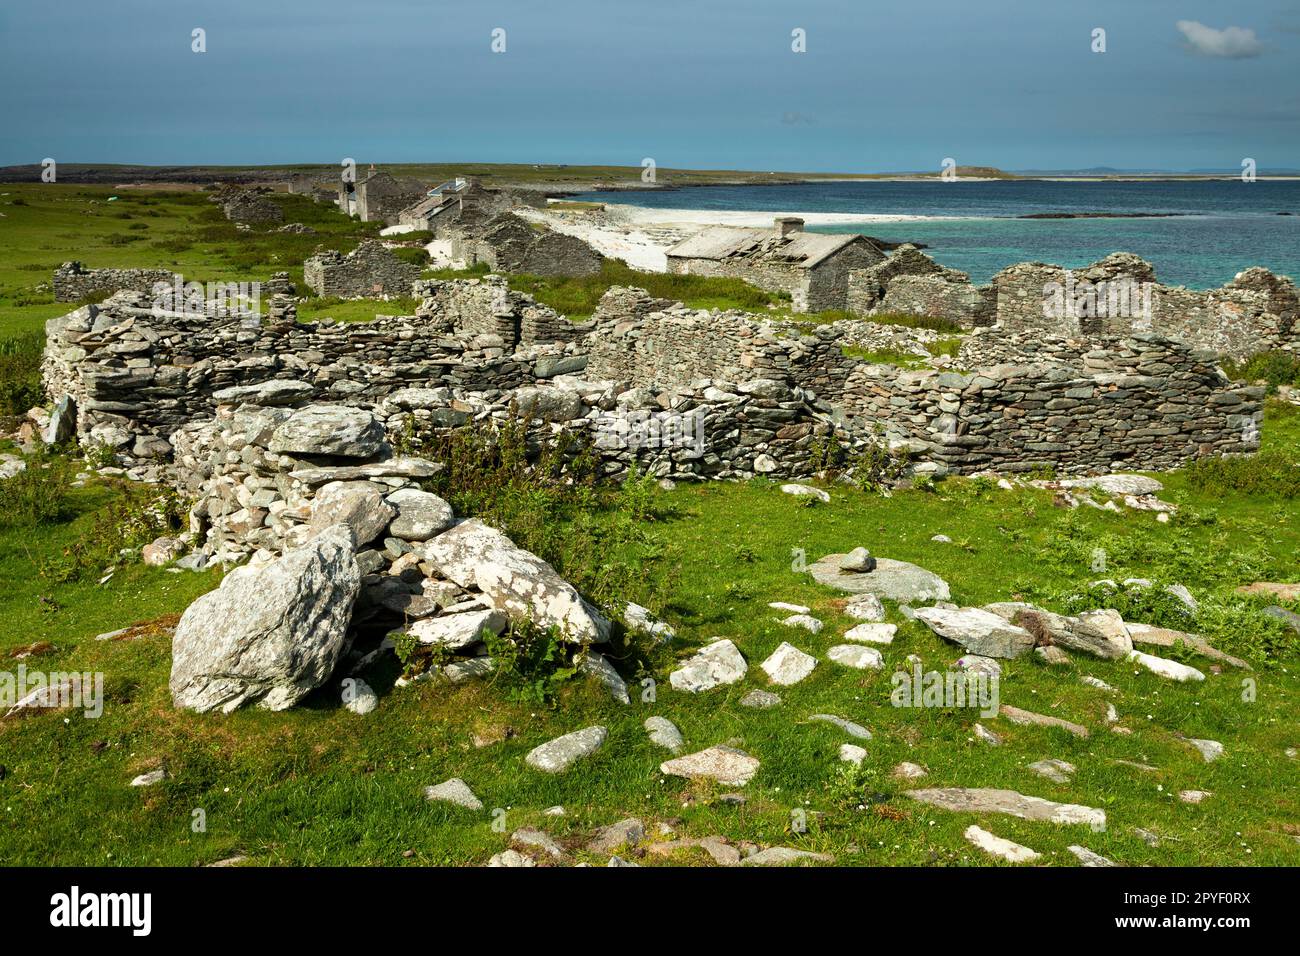 Villaggio abbandonato sull'isola di Inishkea South nella baia di Blacksod sulla Wild Atlantic Way nella contea di Mayo in Irlanda Foto Stock